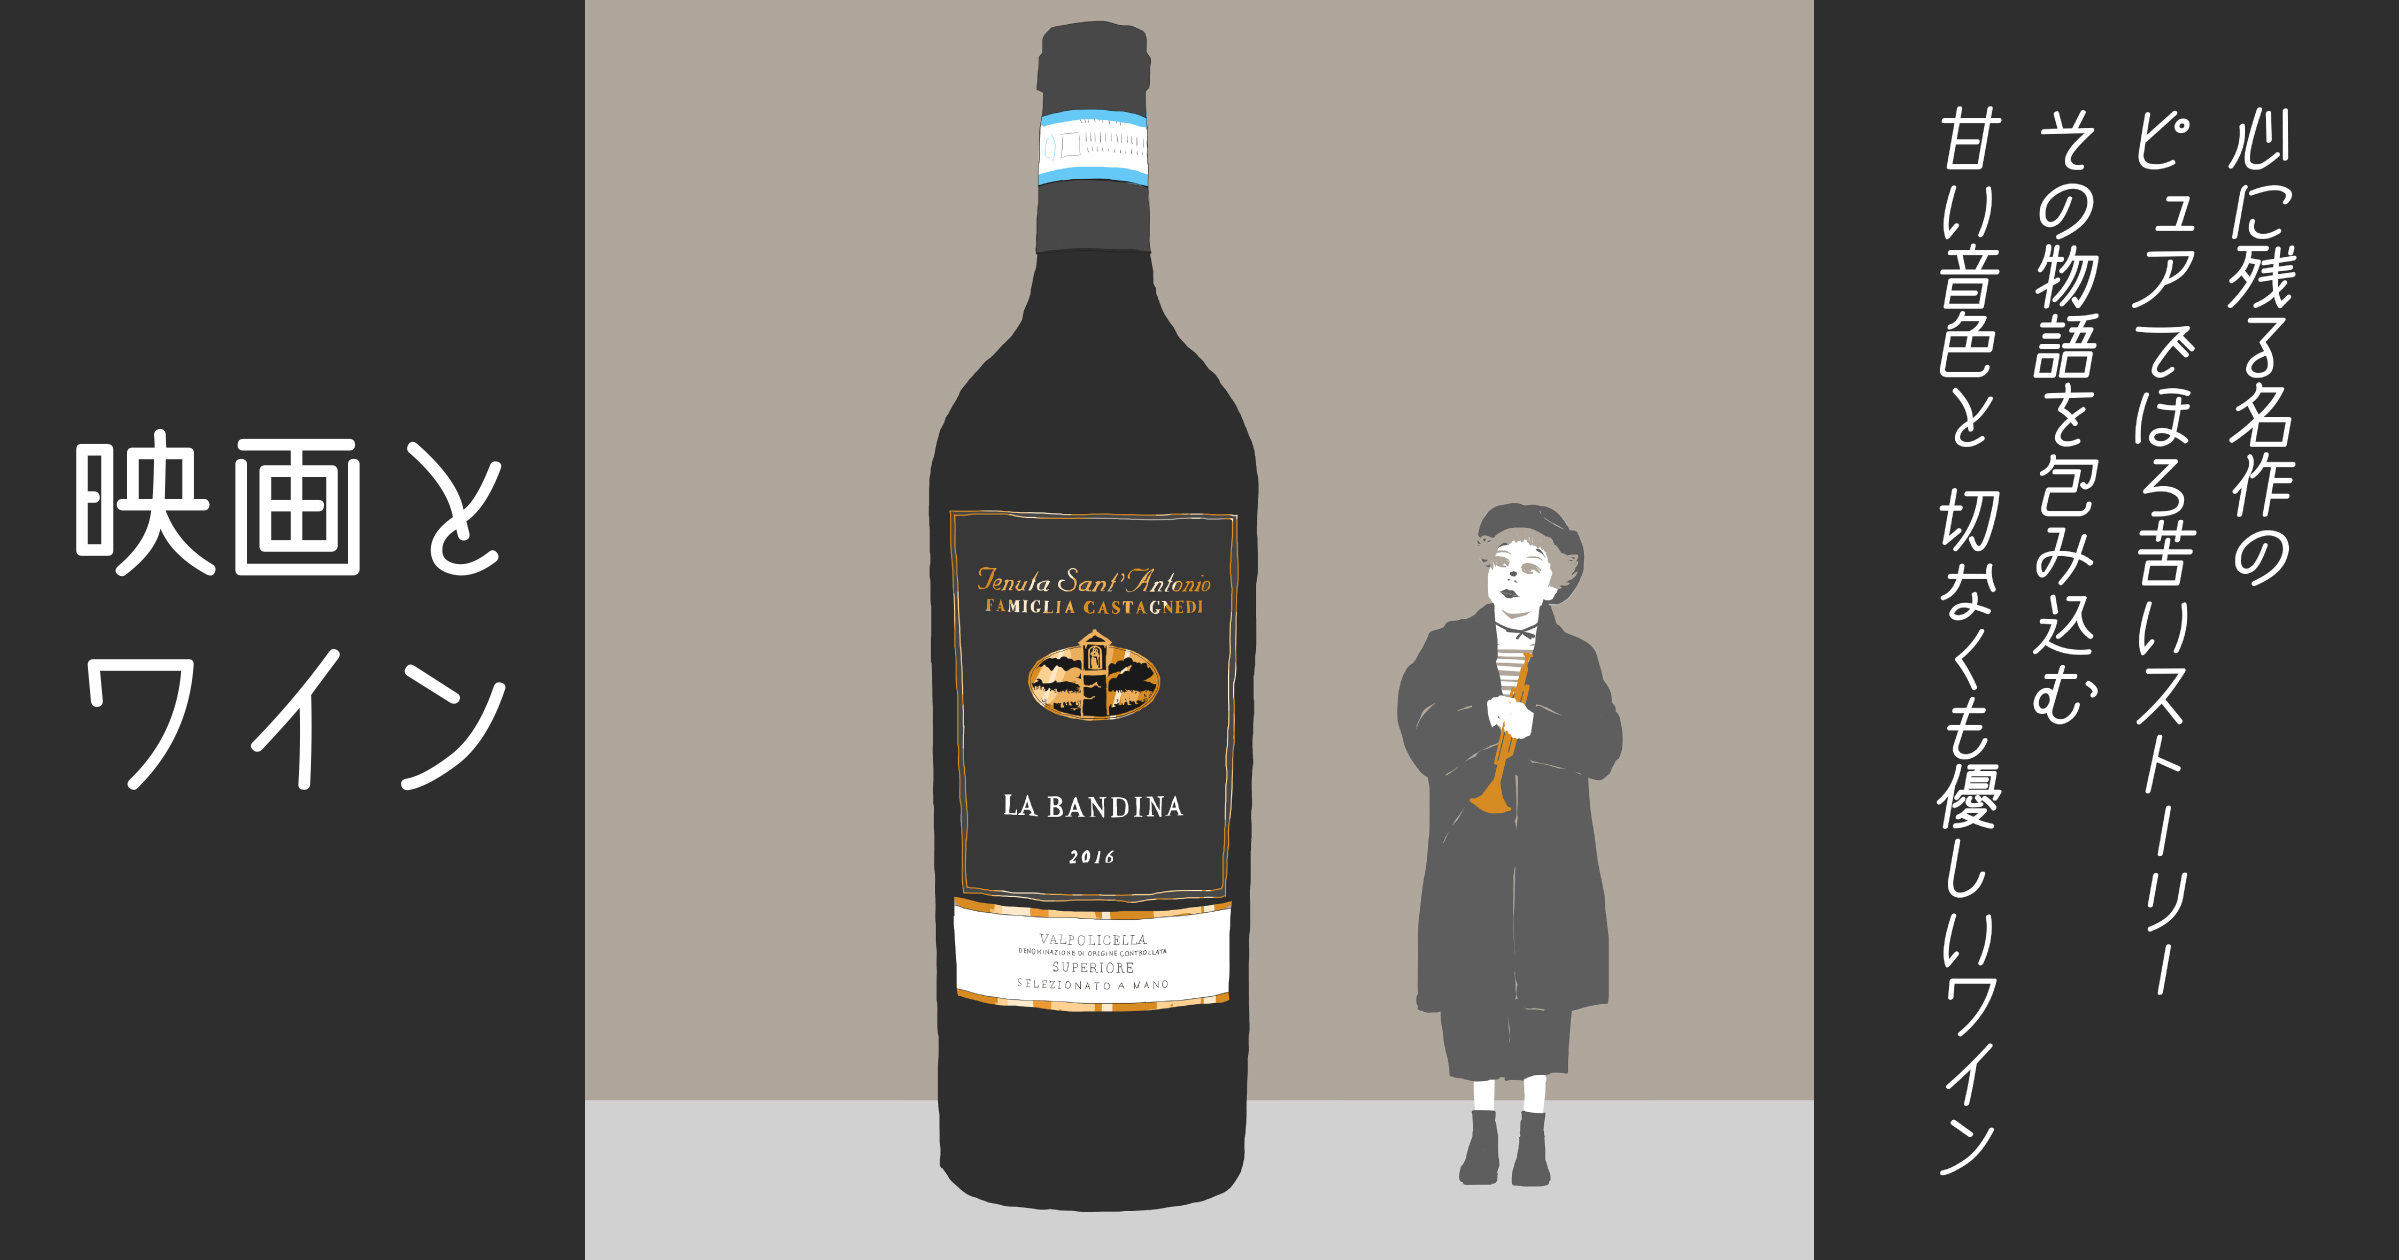 【シネマ×ワイン】『道』（フェデリコ・フェリーニ）と、ほろ苦く美しい赤ワイン、ラ・バンディーナ ヴァルポリチェッラ・スーペリオーレ